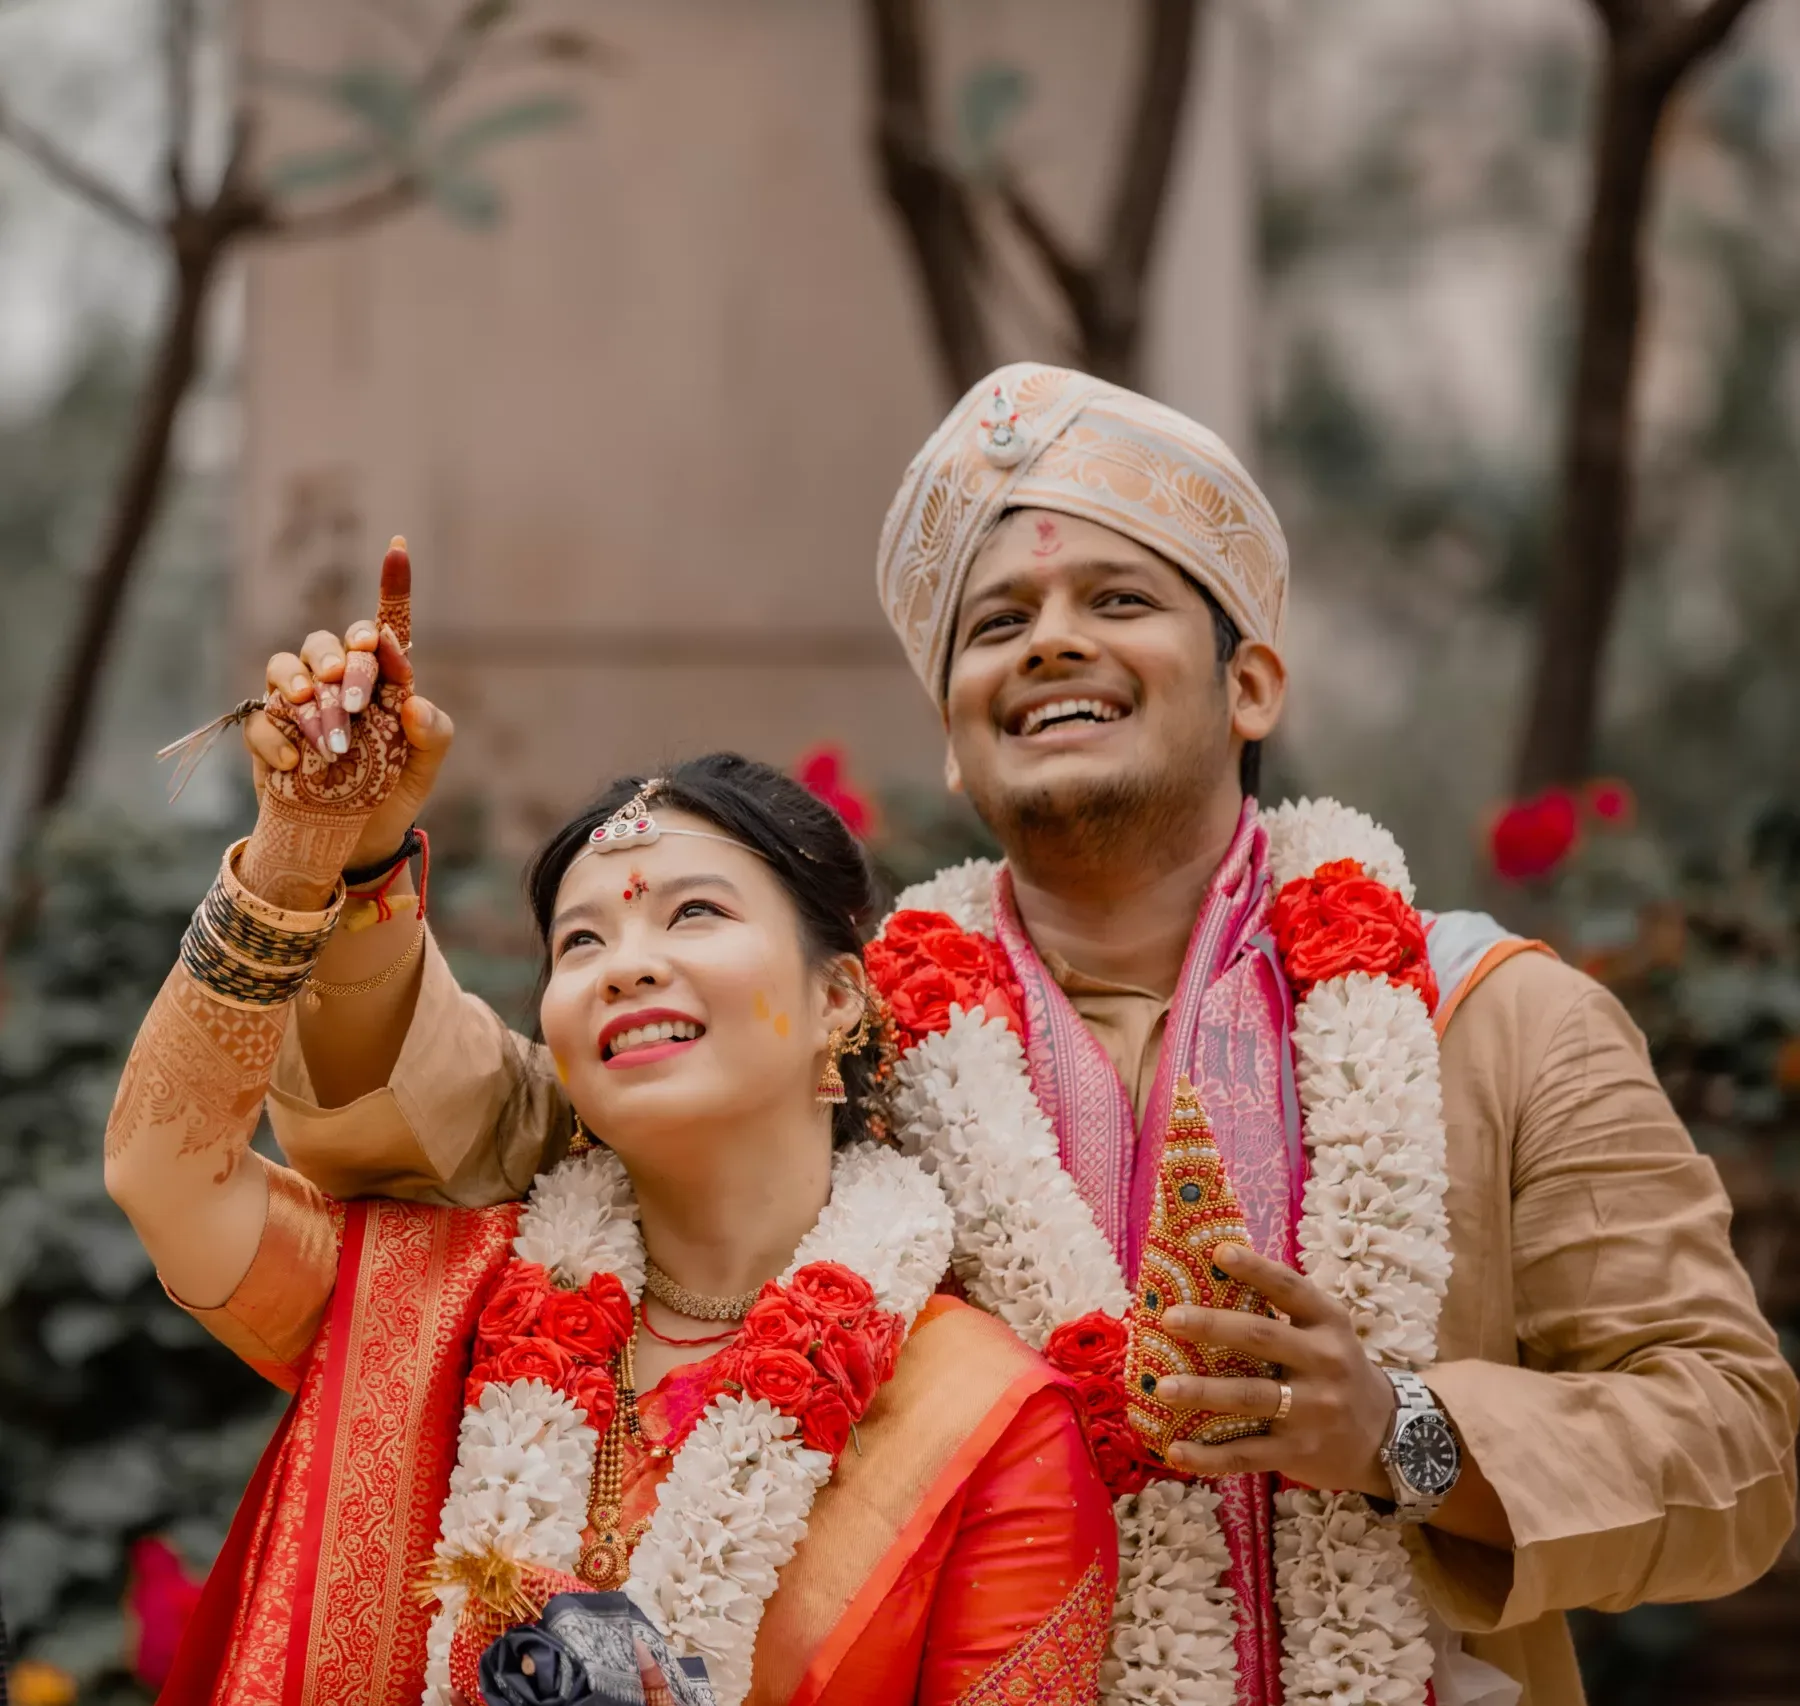 Wedding Photography in Bangalore, India: Ganapathi- Rachele wedding photoshoot